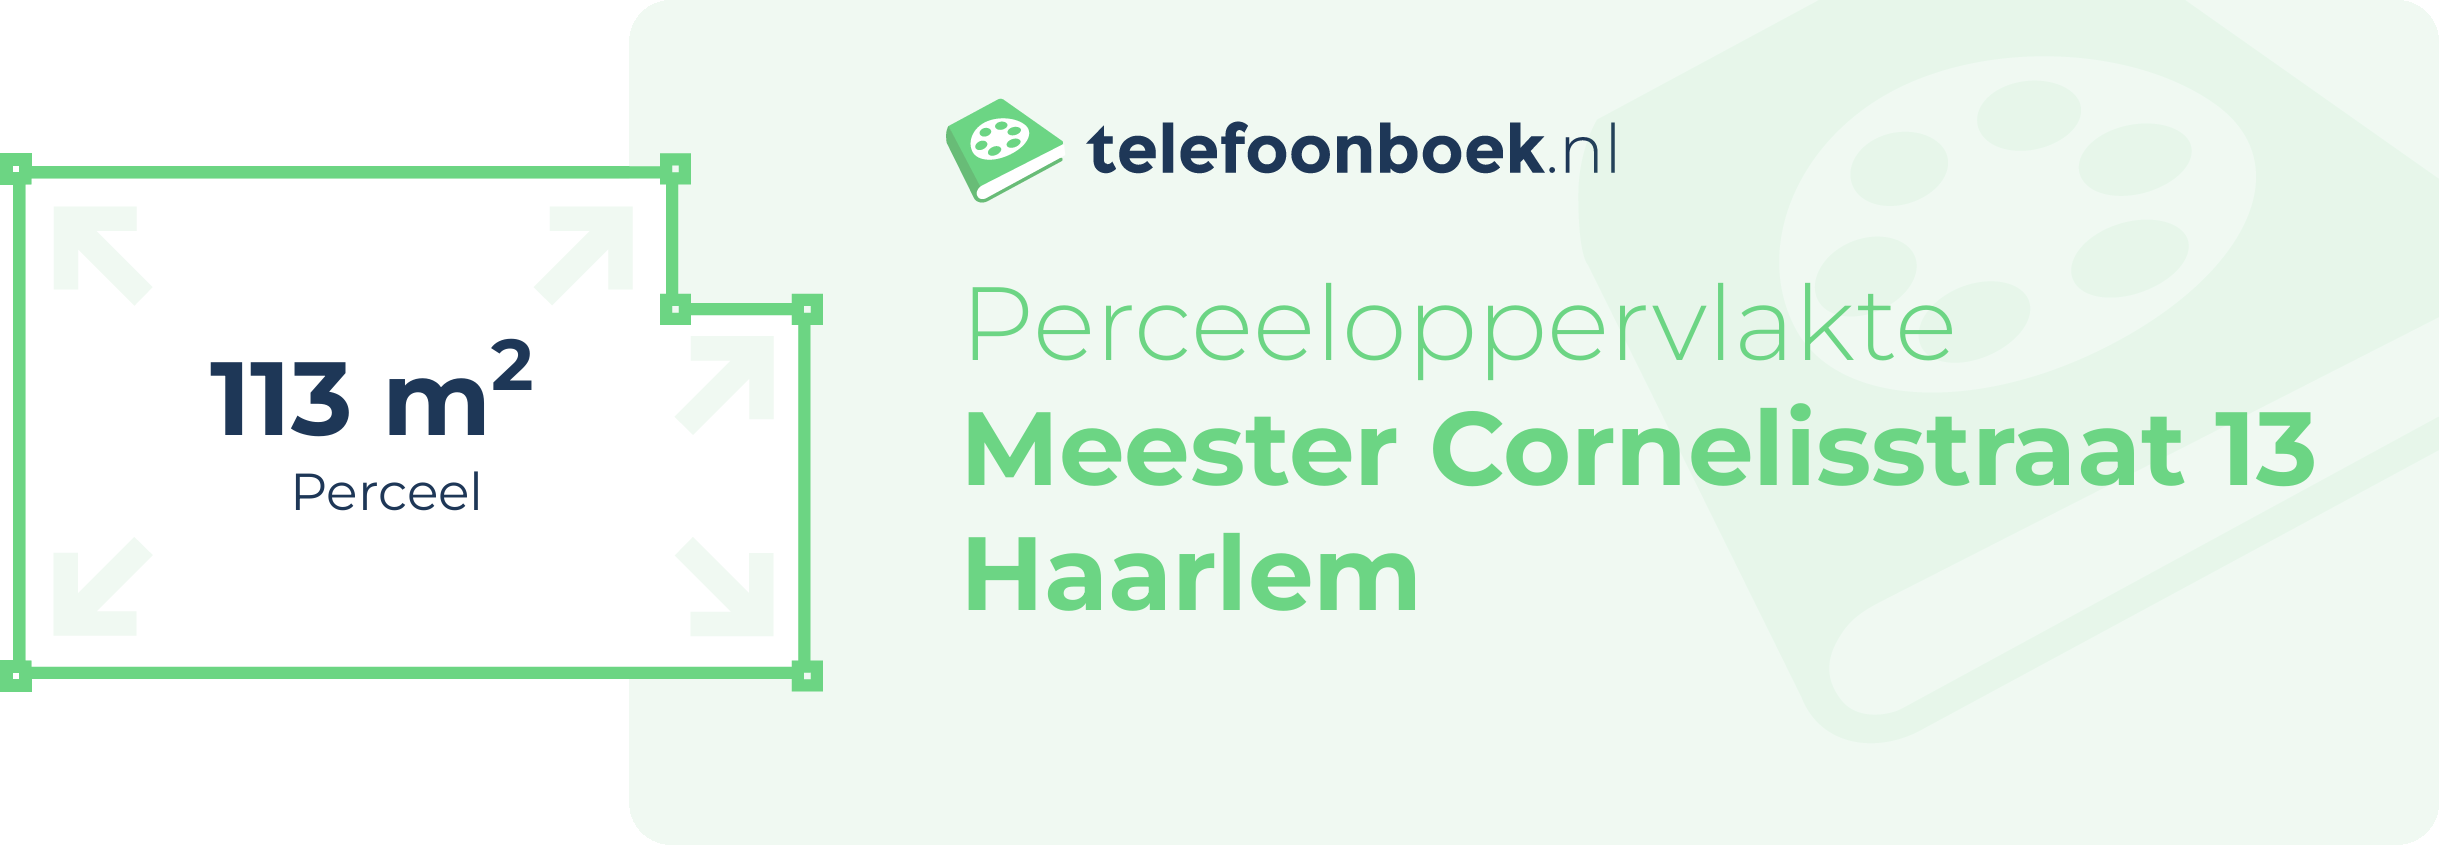 Perceeloppervlakte Meester Cornelisstraat 13 Haarlem